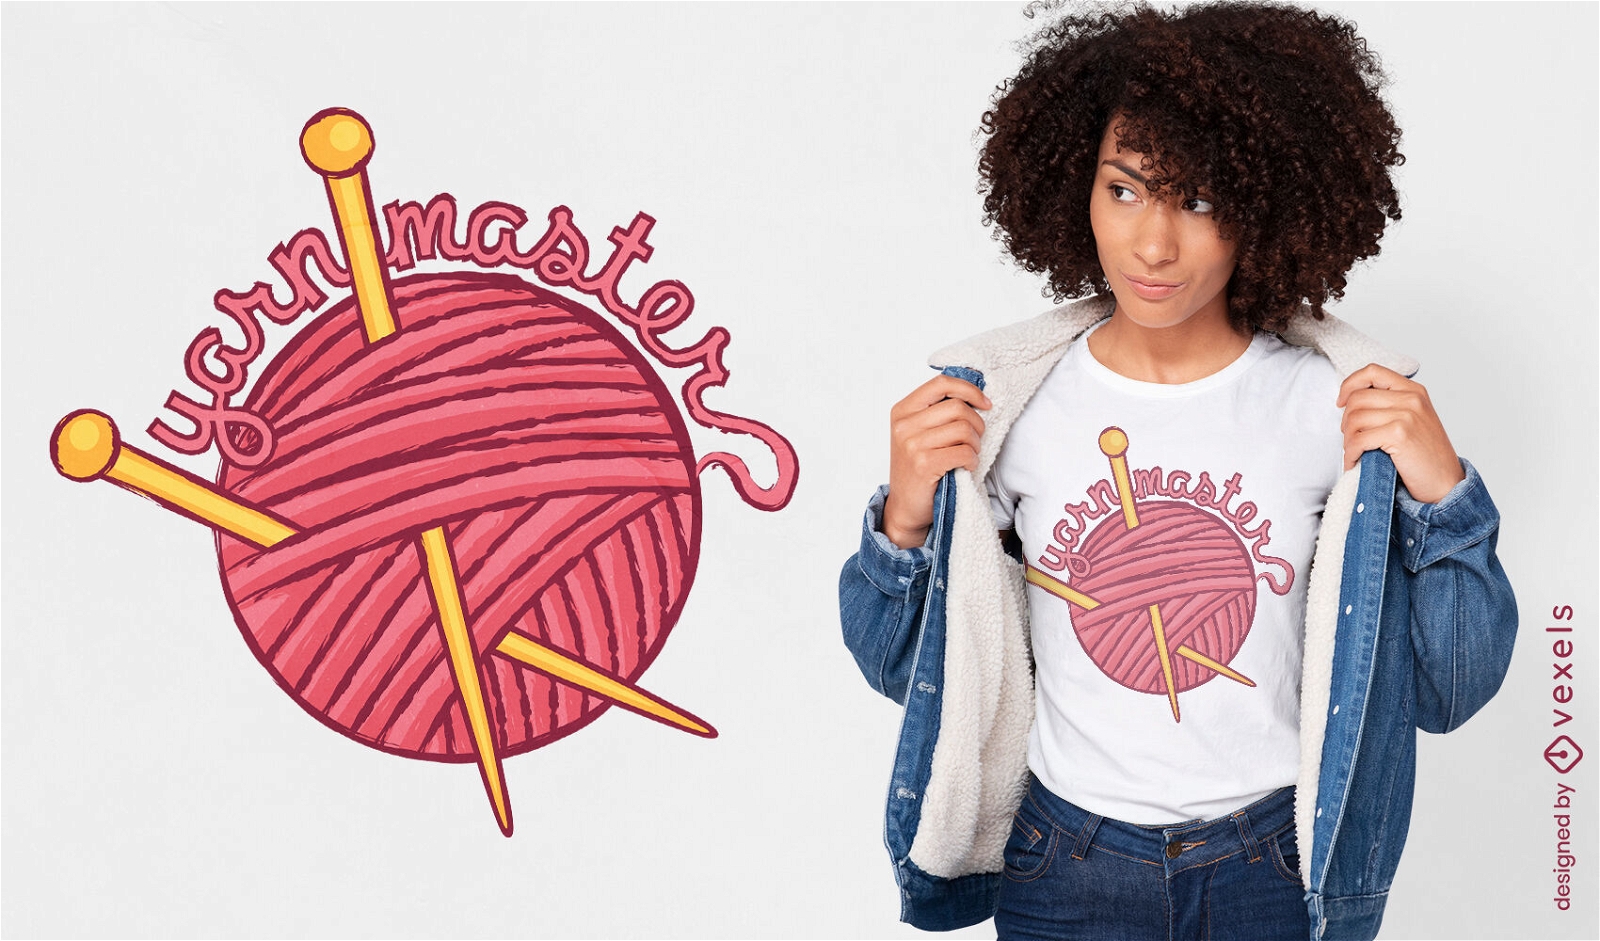 Diseño de camiseta de hobby de tejer con bolas de hilo.